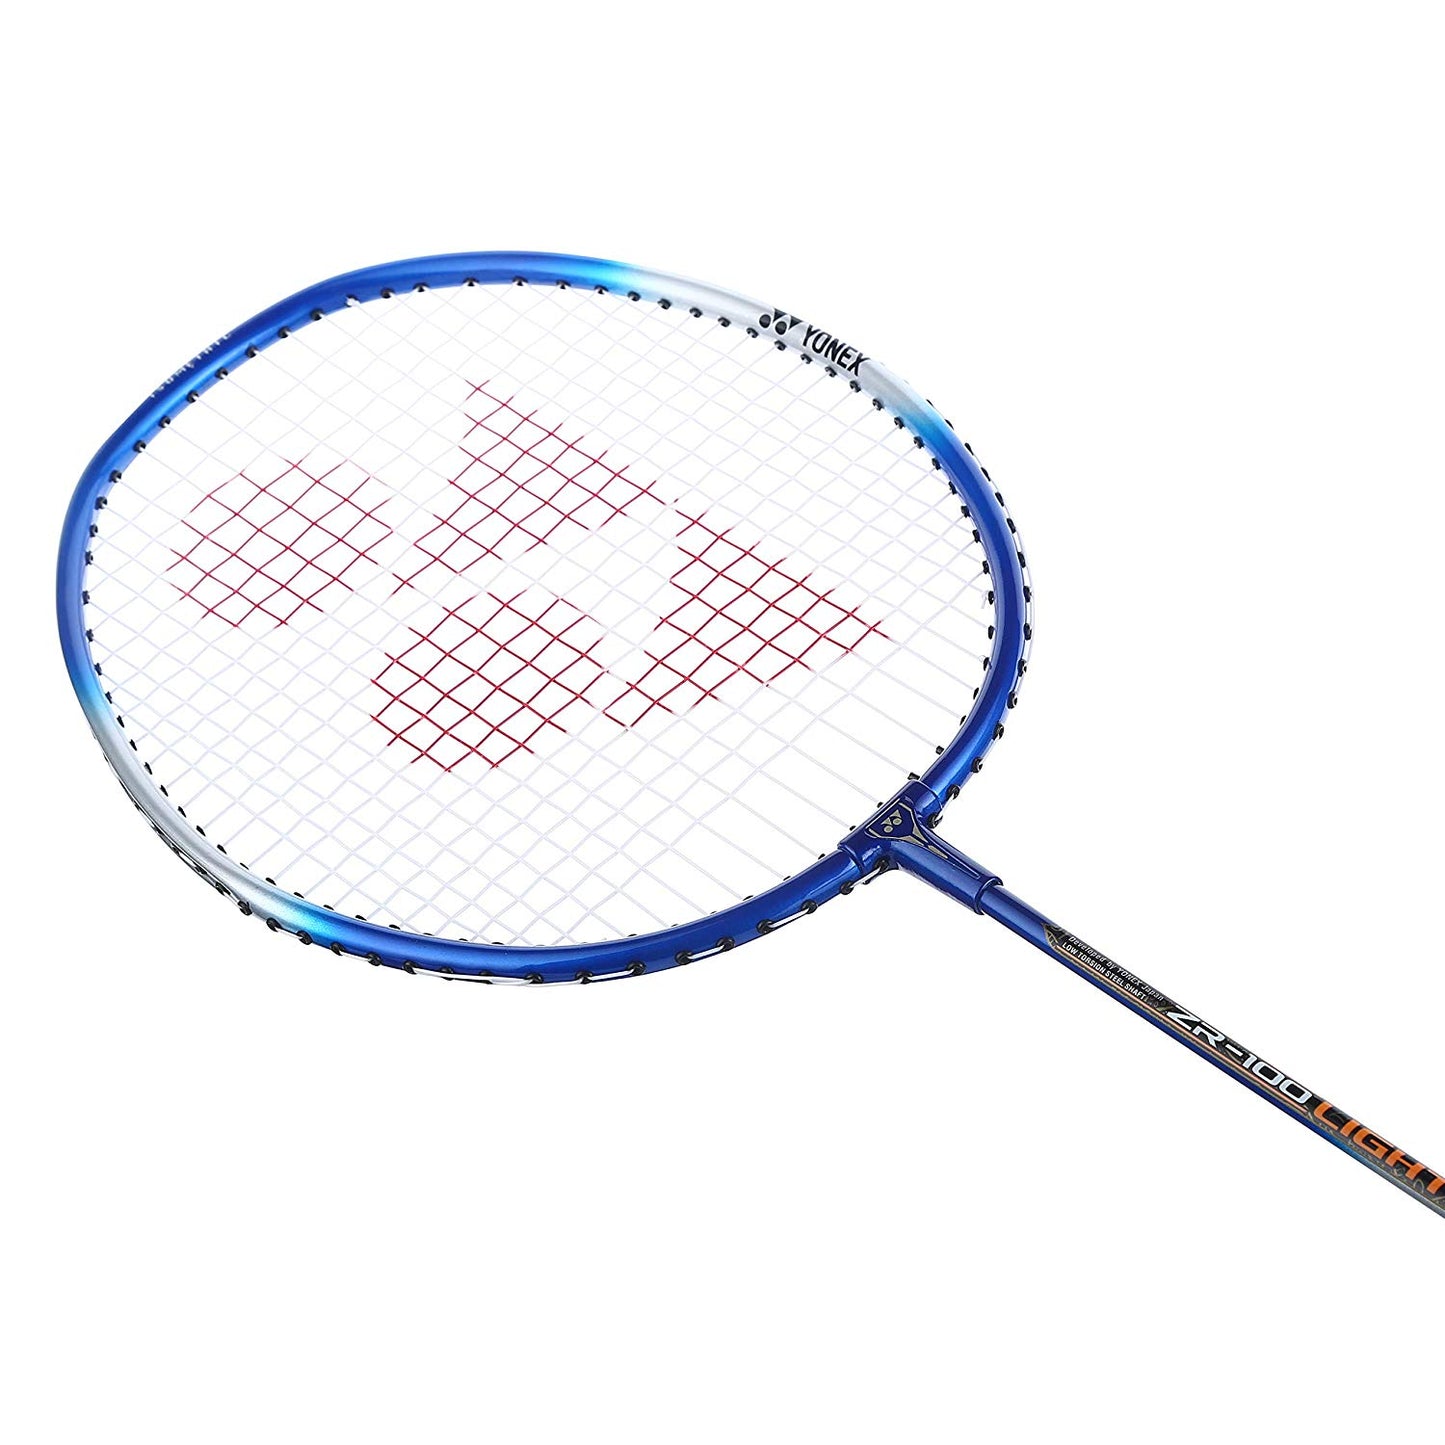 Yonex ZR 100 Light Aluminum Badminton Racquet Strung, Grip Size G4 (Blue) - Best Price online Prokicksports.com